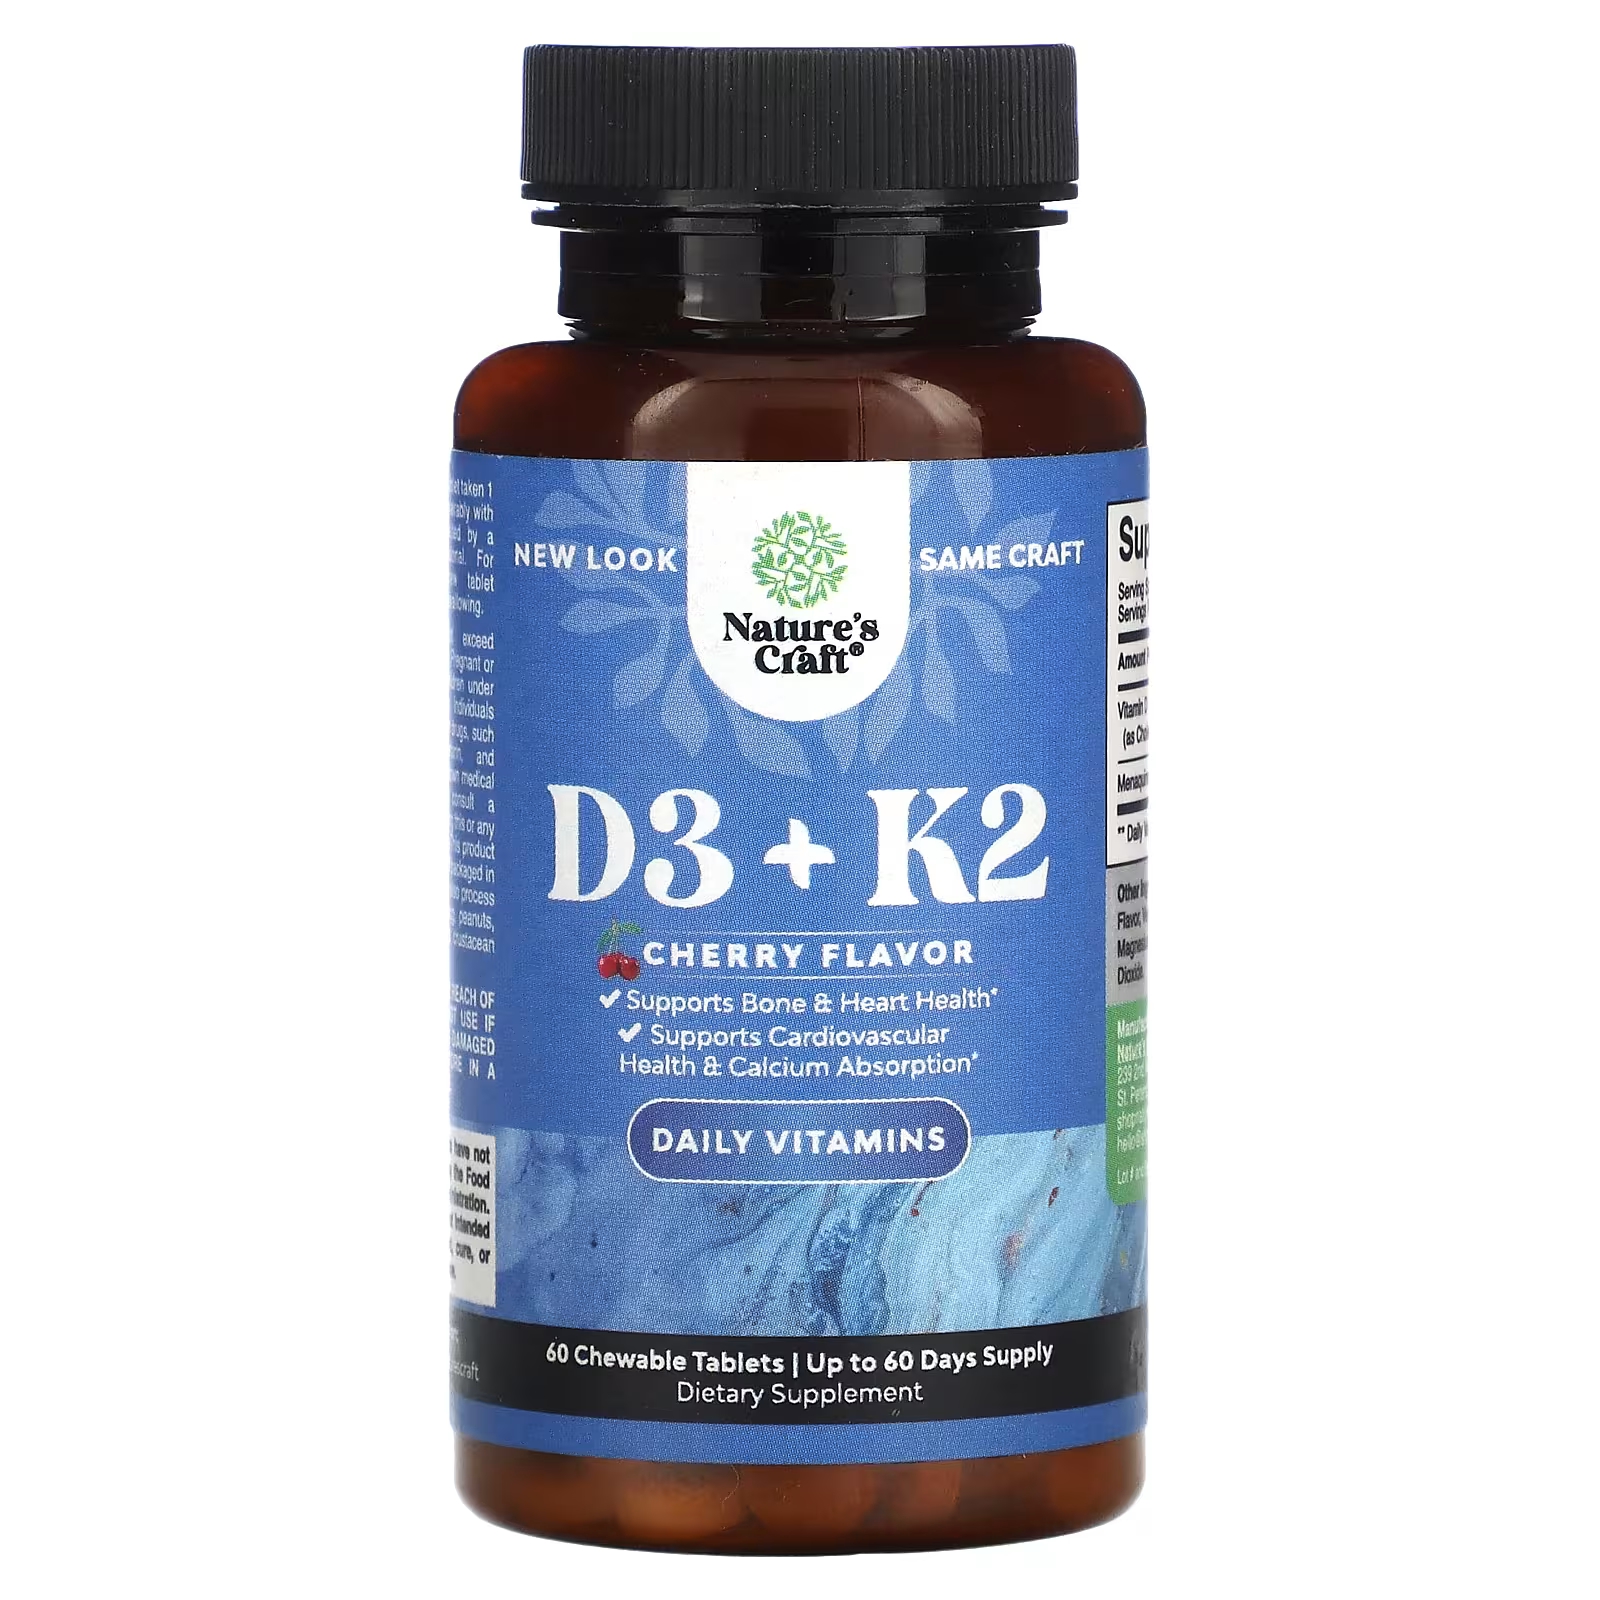 Пищевая добавка Nature's Craft D3 + K2 вишня, 60 жевательных таблеток пищевая добавка k2 d3 zhou nutrition клубника 60 жевательных таблеток